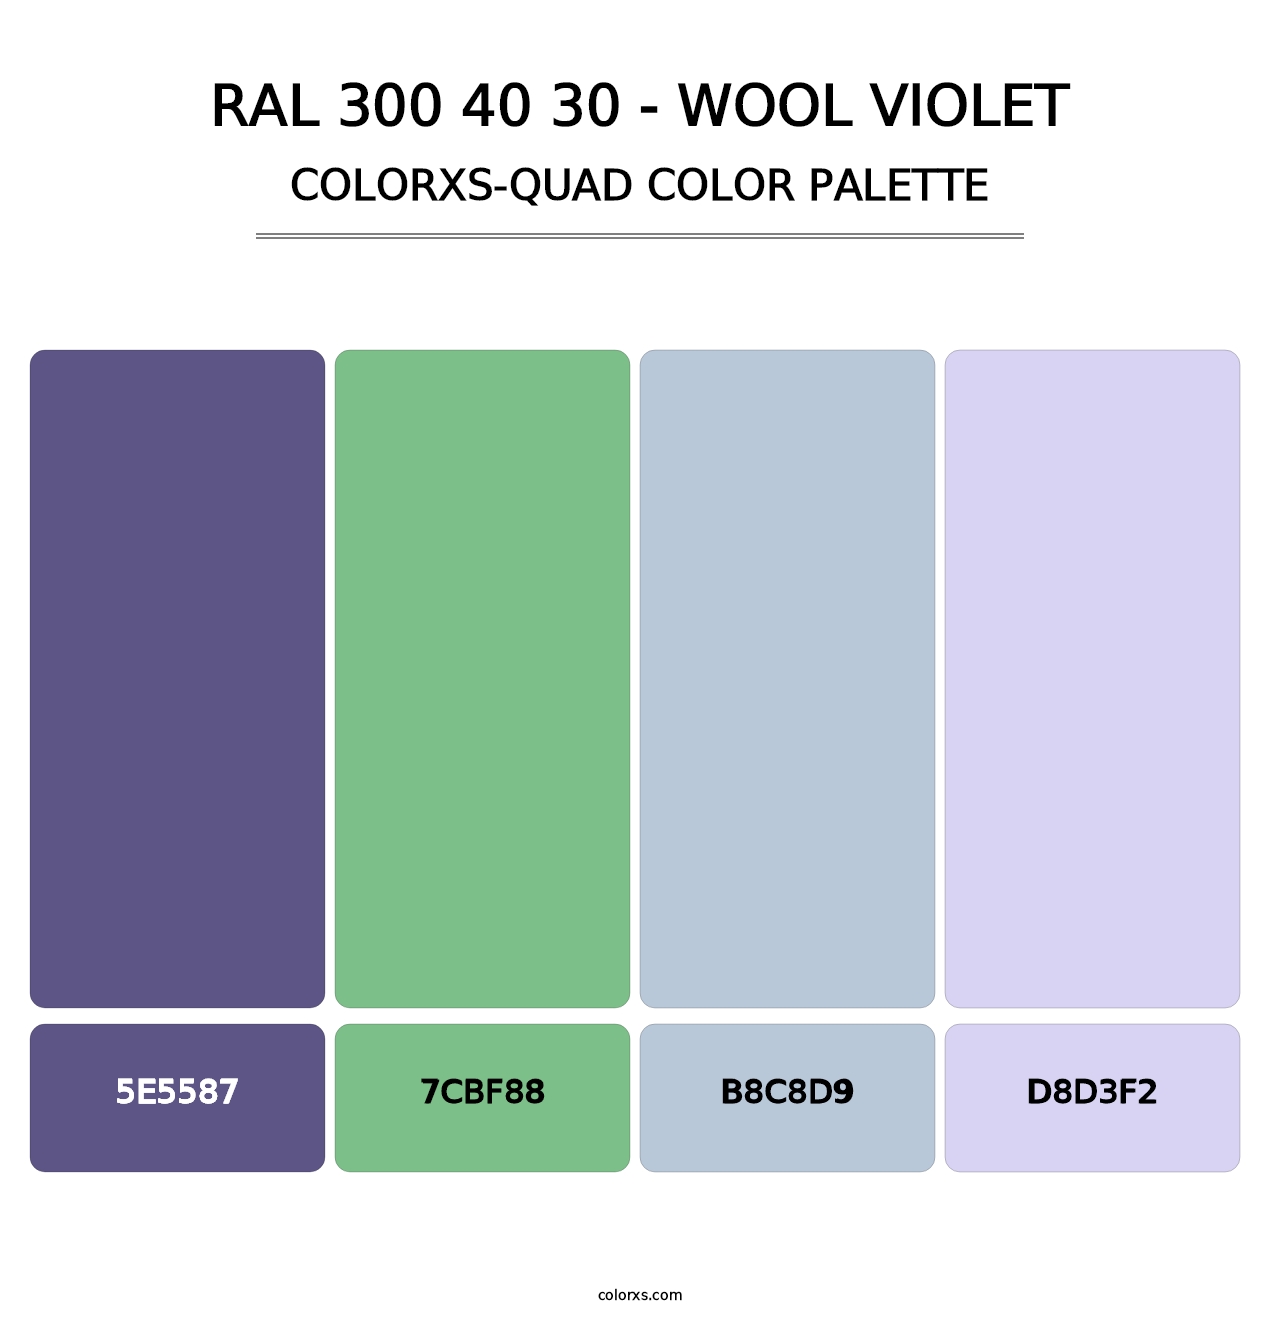 RAL 300 40 30 - Wool Violet - Colorxs Quad Palette